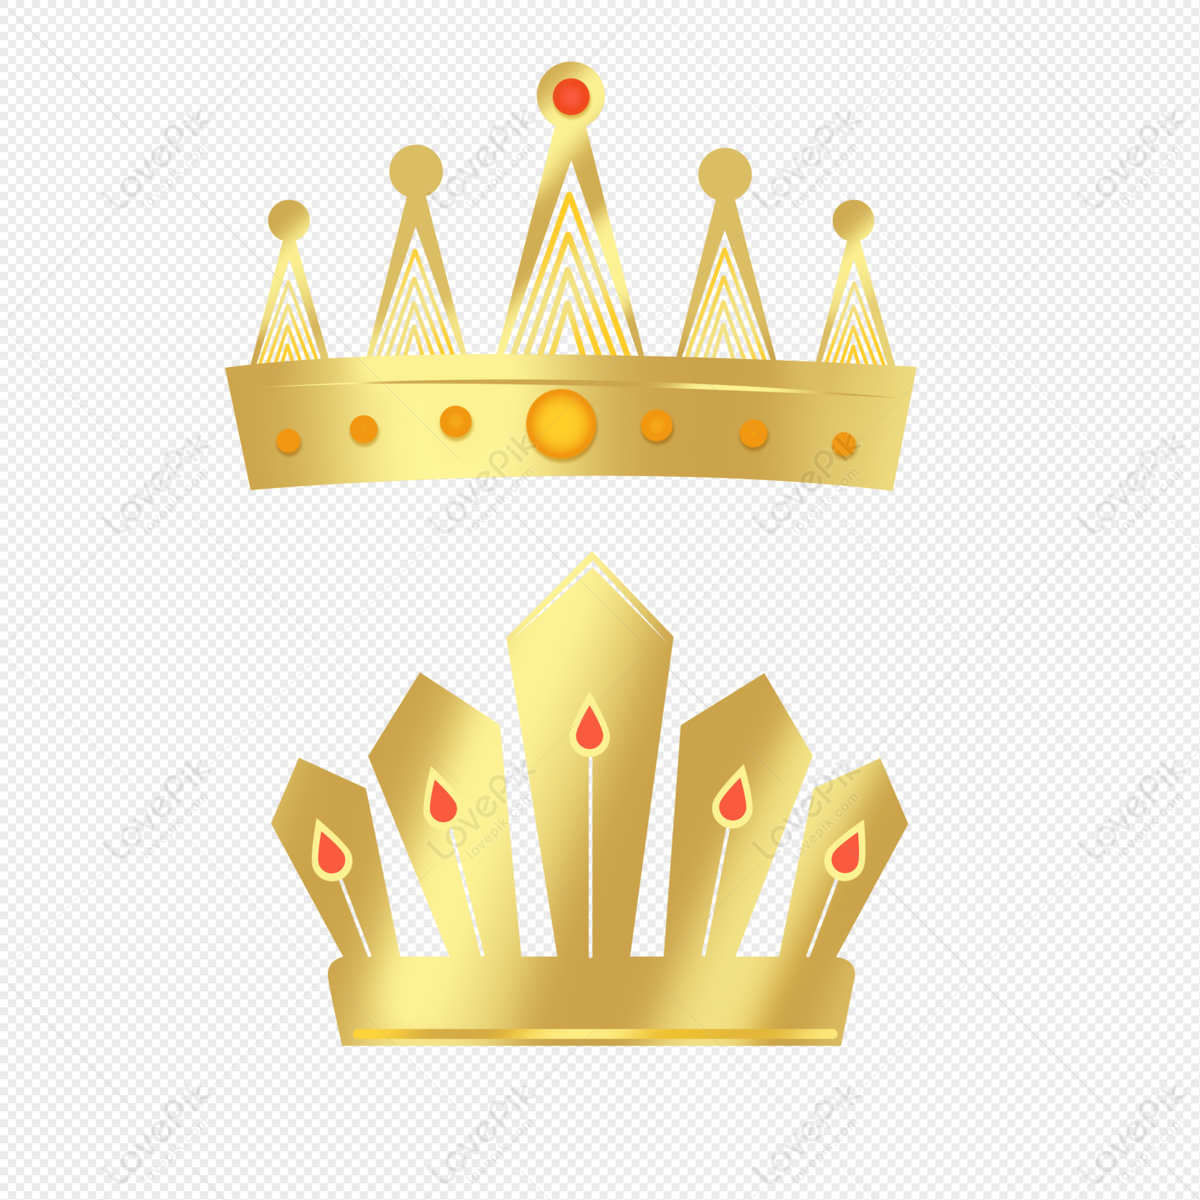 Biểu tượng vương miện vàng: Biểu tượng vương miện vàng là biểu tượng đại diện cho quyền lực và vị trí cao trong xã hội. Với sự phát triển của công nghệ, người dùng có thể tìm thấy những biểu tượng vương miện vàng đẹp mắt và chất lượng cao để sử dụng trong các thiết kế của mình.